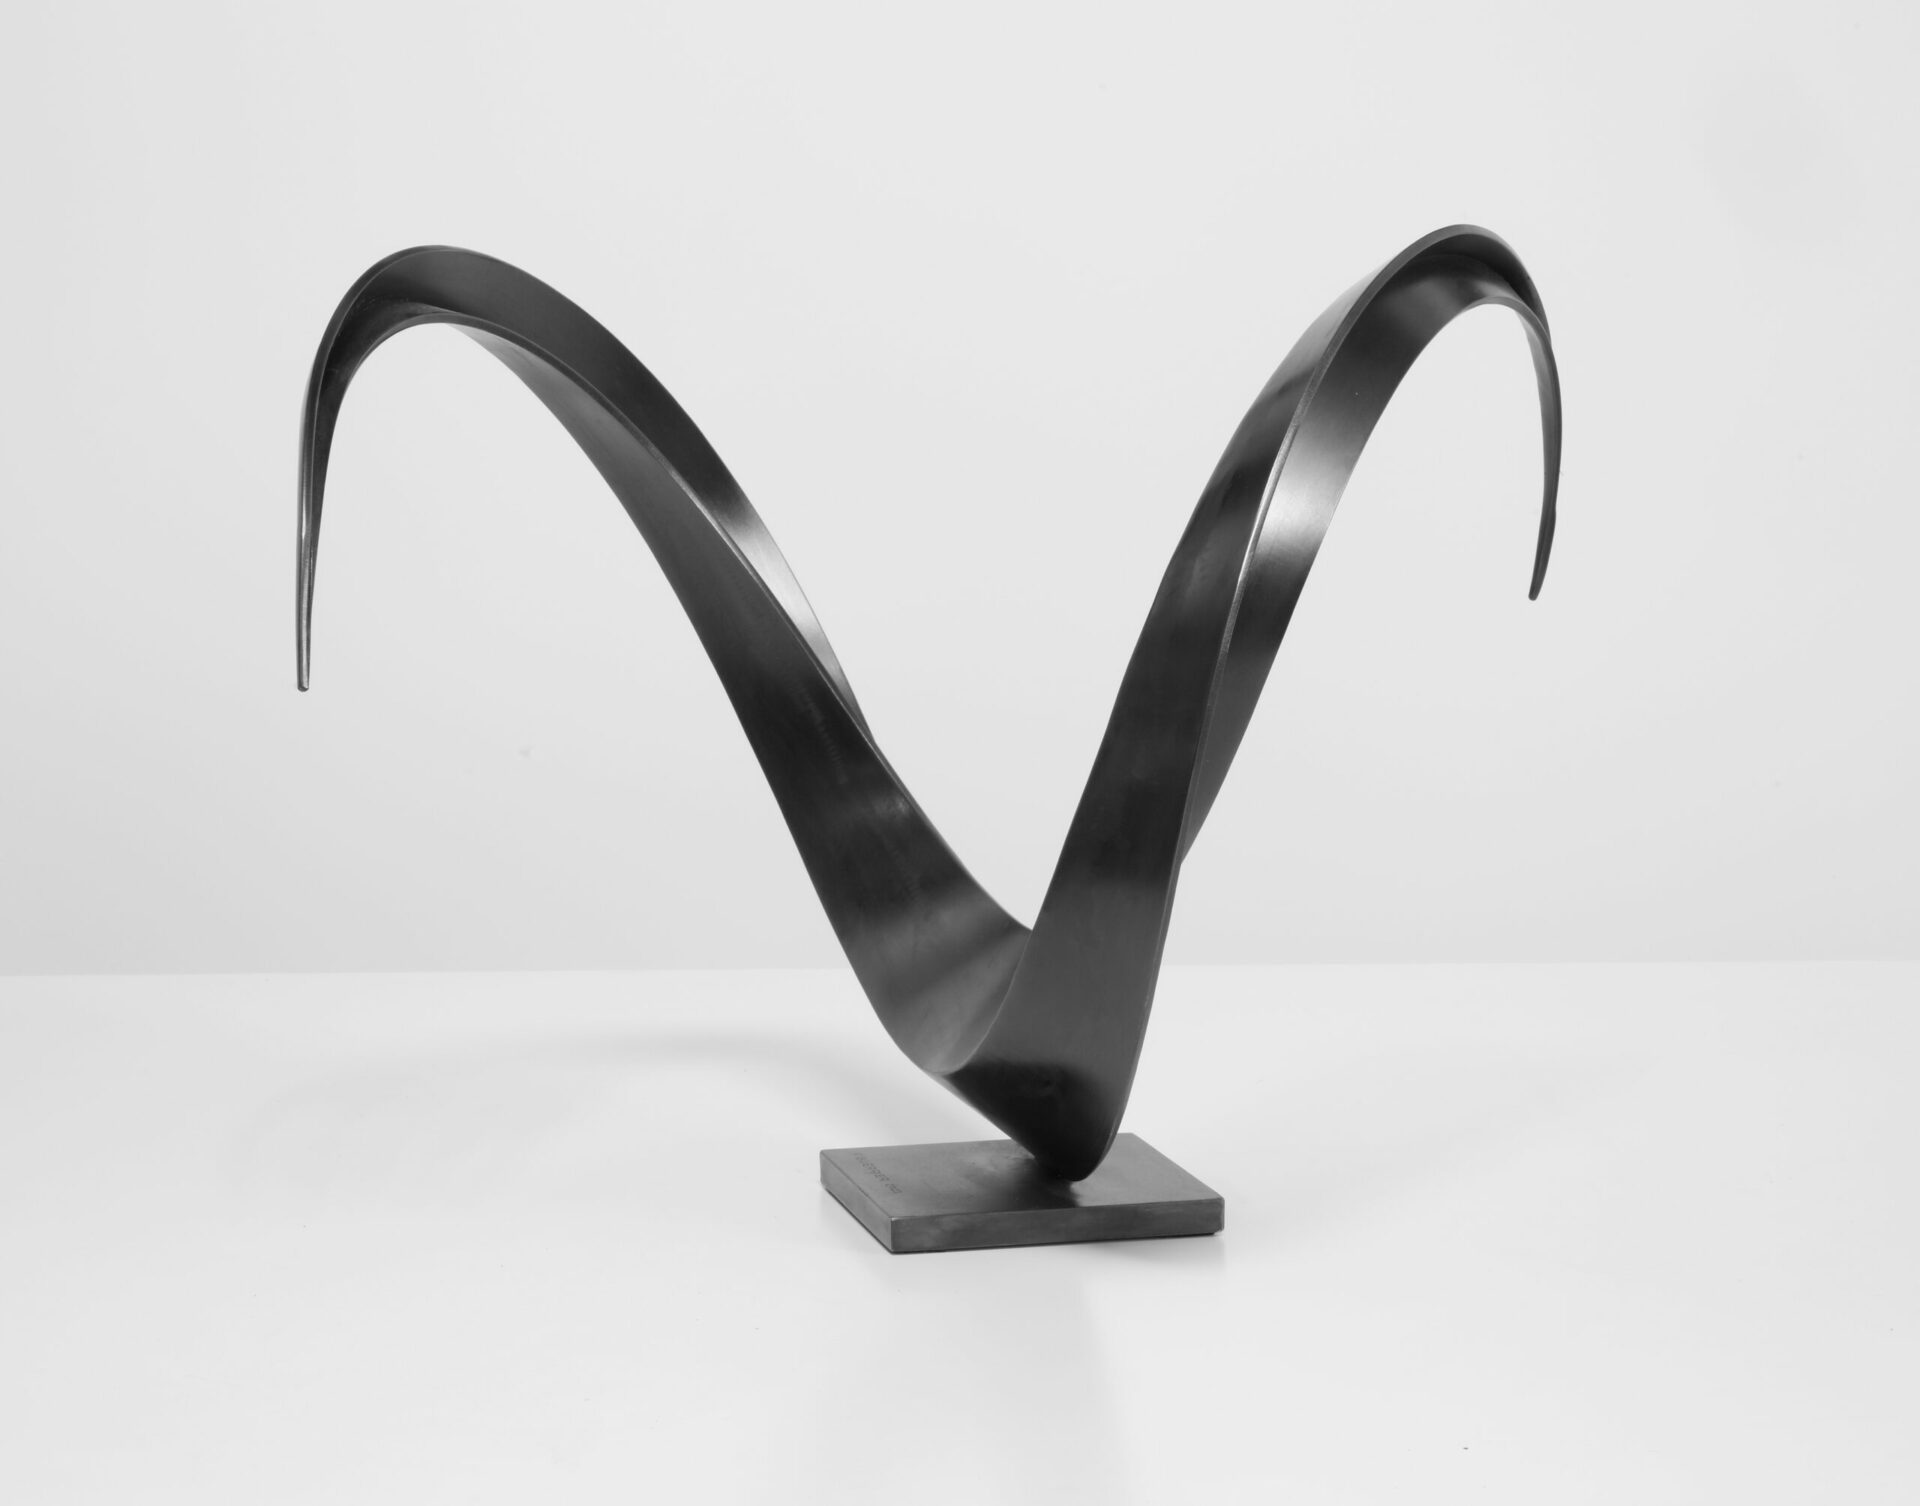 sculpture contemporaine abstraite metal peint noir de francis guerrier en vente a la galerie22